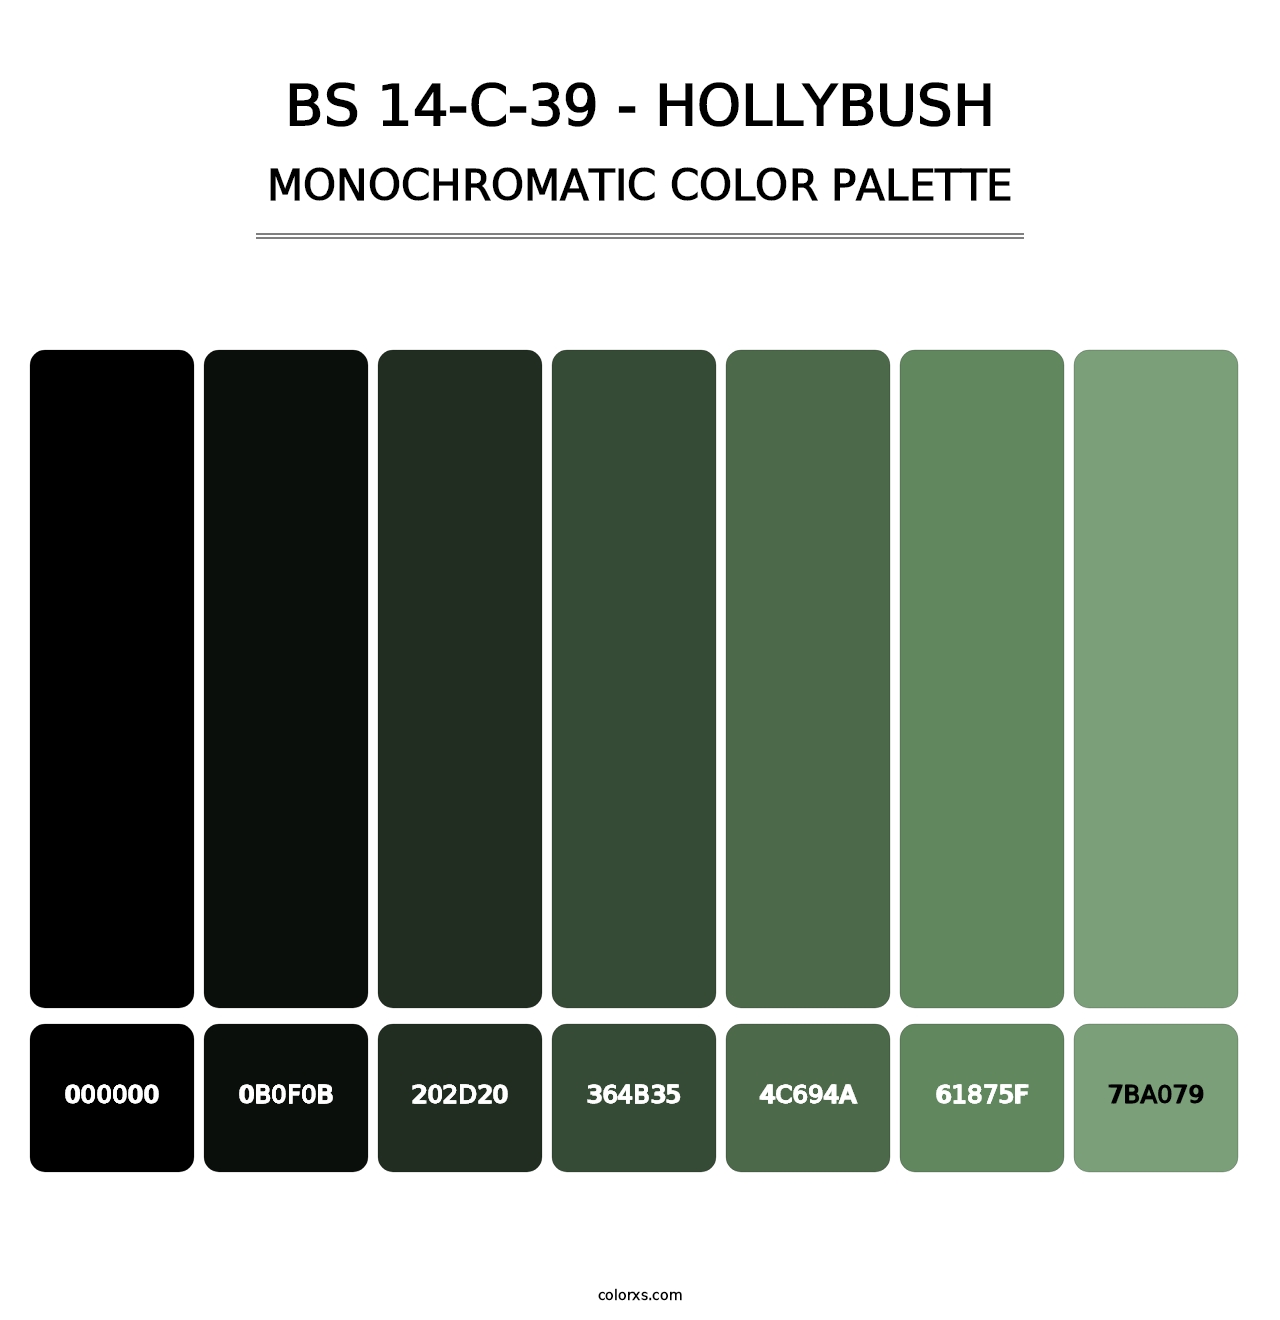 BS 14-C-39 - Hollybush - Monochromatic Color Palette